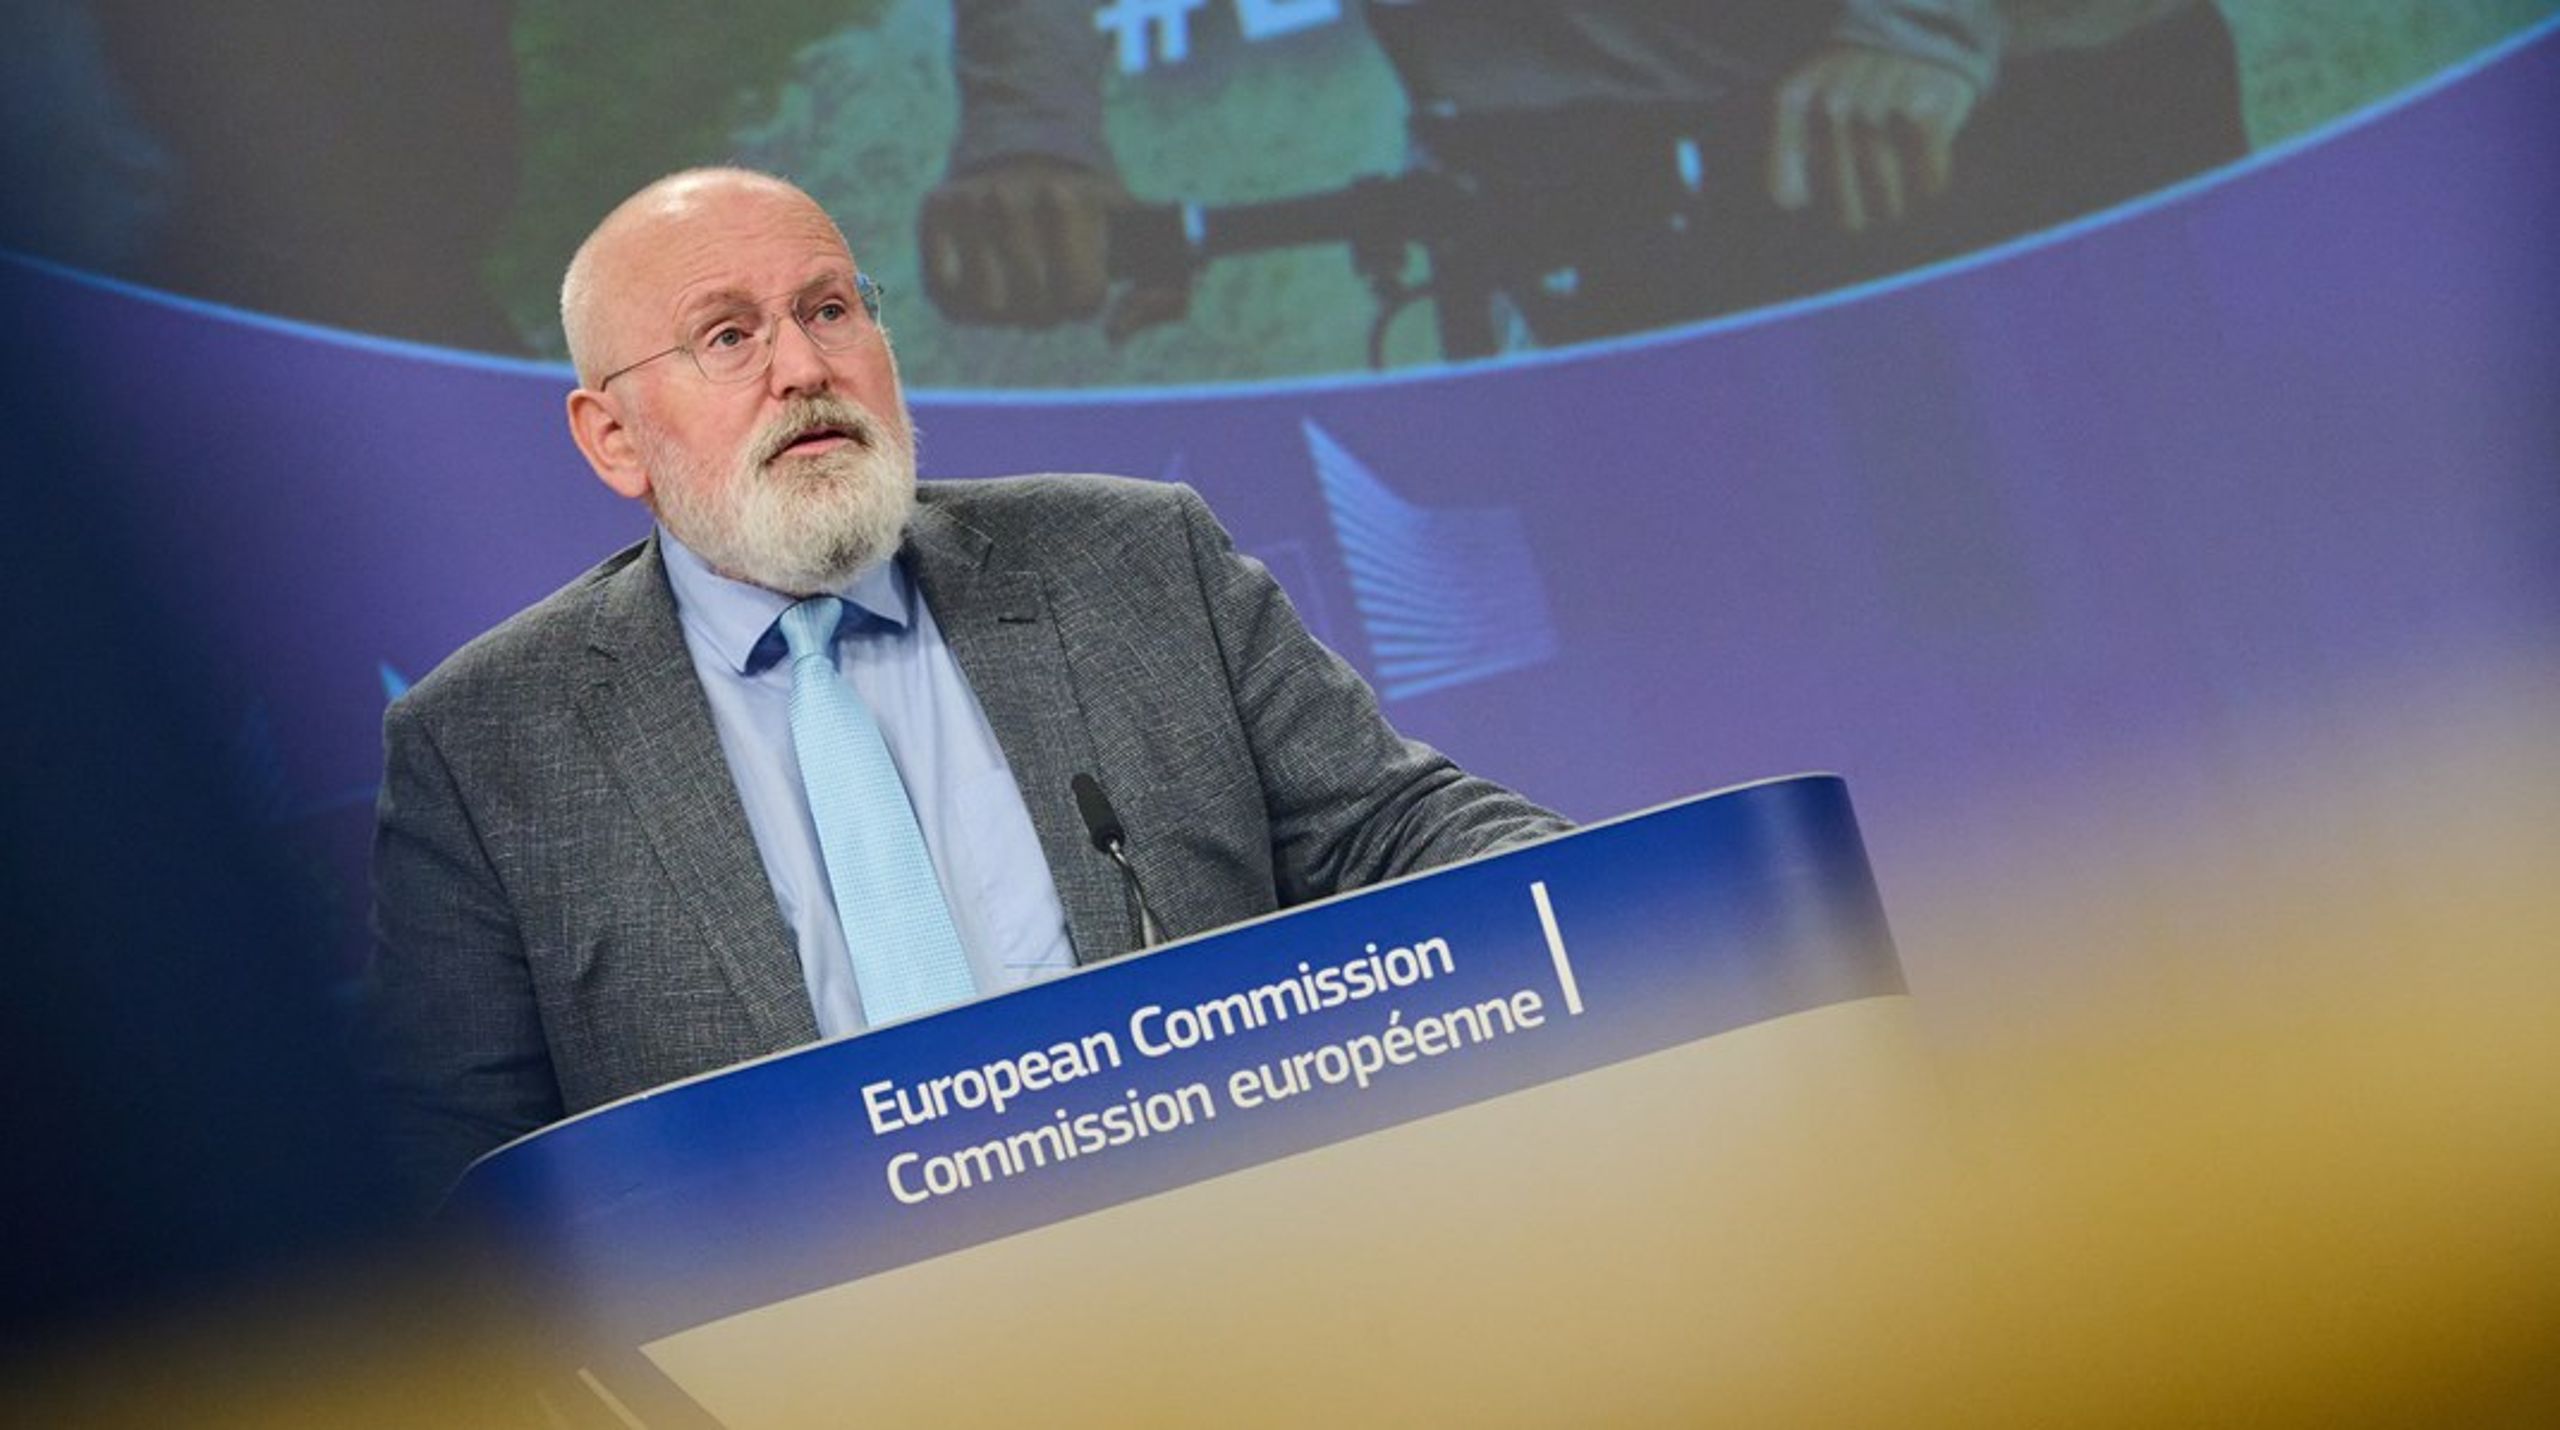 EU:s klimatchef Frans Timmermans tar med sig åtminstone ett besked till klimatförhandlingarna: 

”Europa anammar övergången till nollutsläppsmobilitet.”<br>